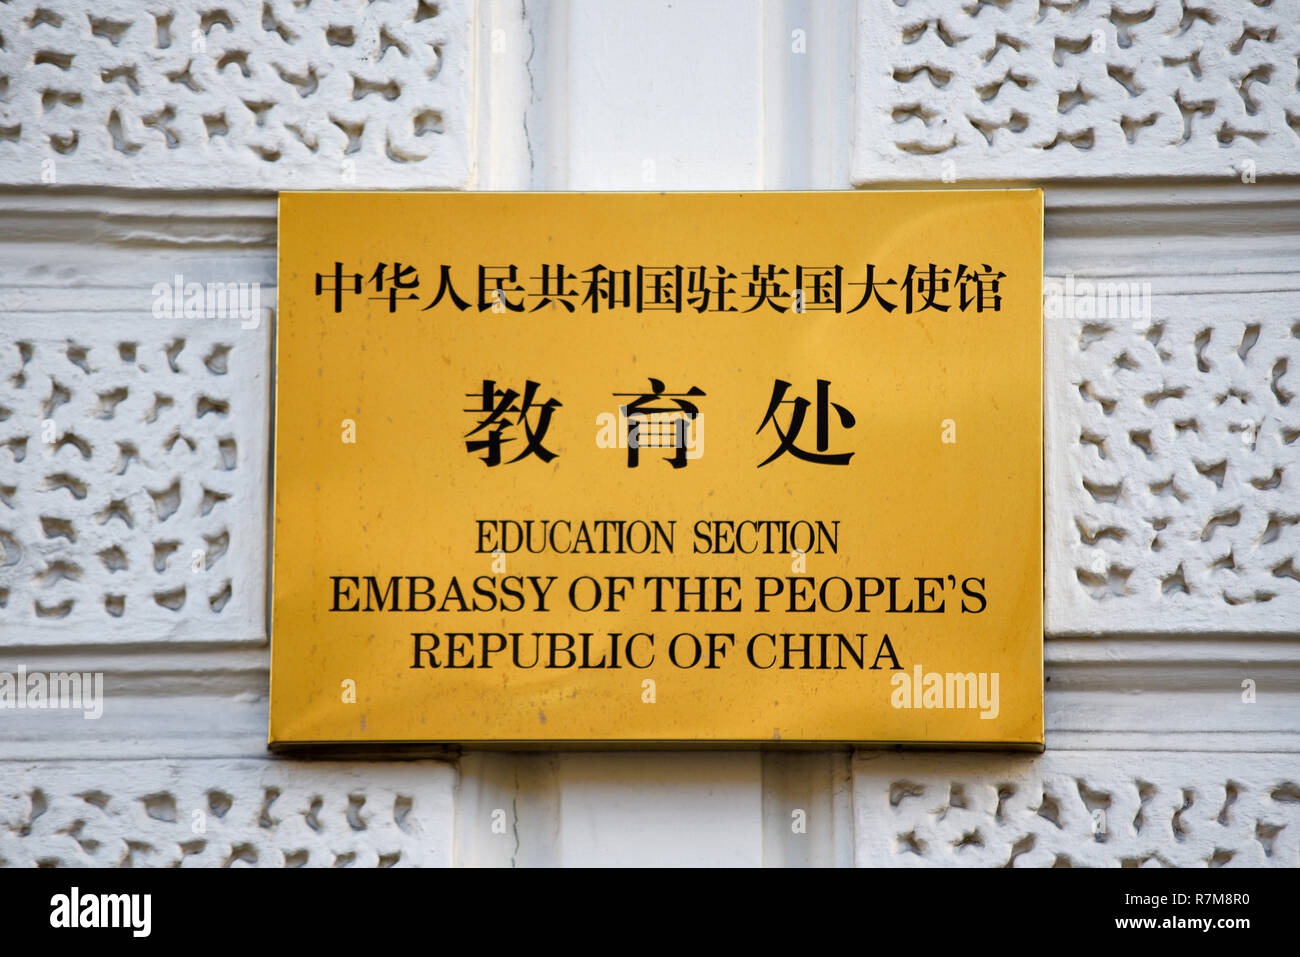 Botschaft der Volksrepublik China, London, UK. Bereich Bildung. Chinesische Zeichen, schreiben. An der Wand montiert. Plakette. Hinweis Stockfoto